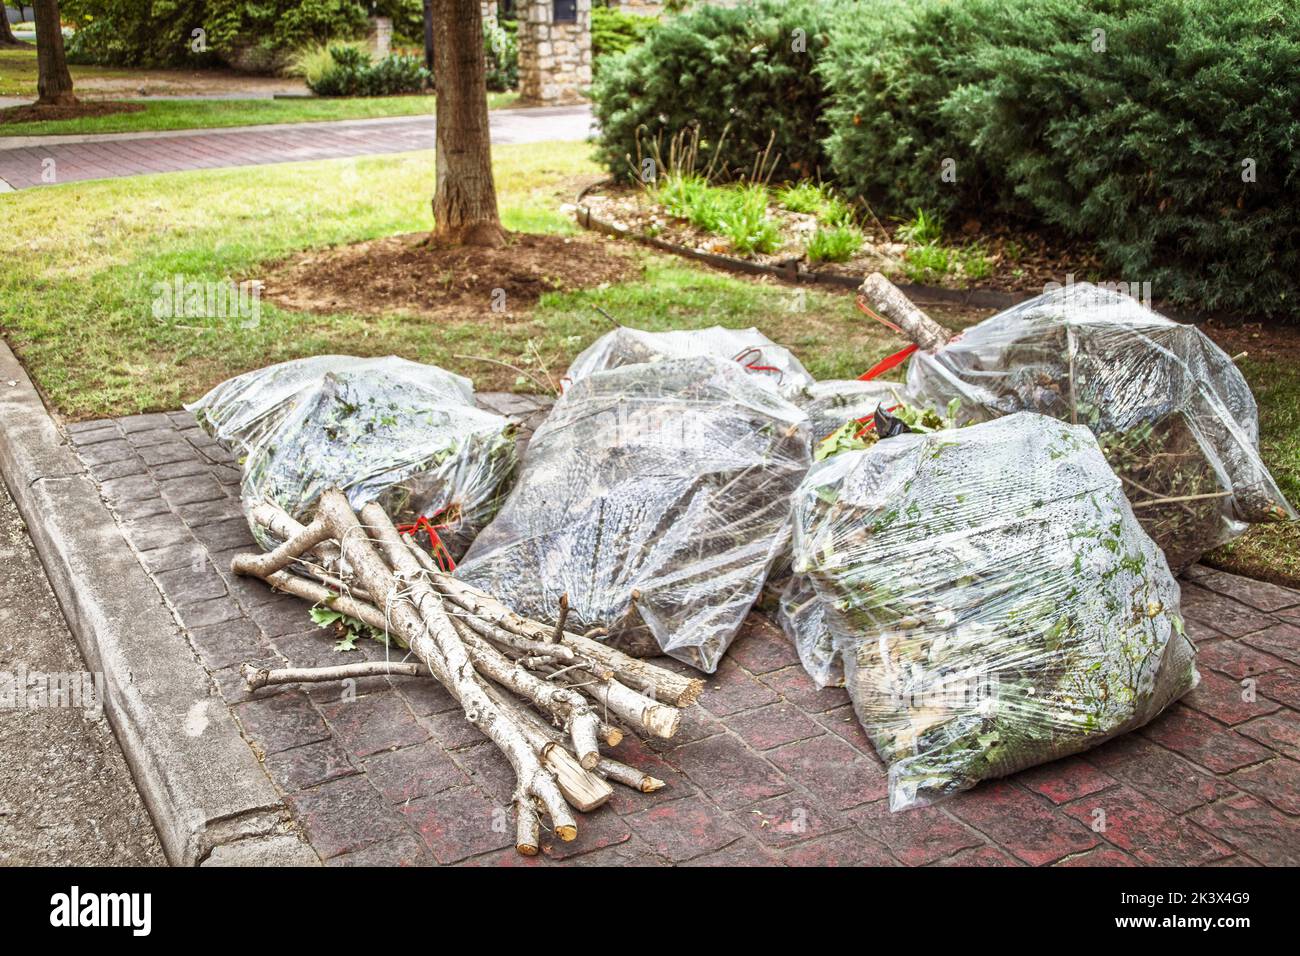 Las bolsas plásticas claras de la limpieza del patio amontonadas en el bordillo para la recogida junto con los palos cortados atados juntos Foto de stock